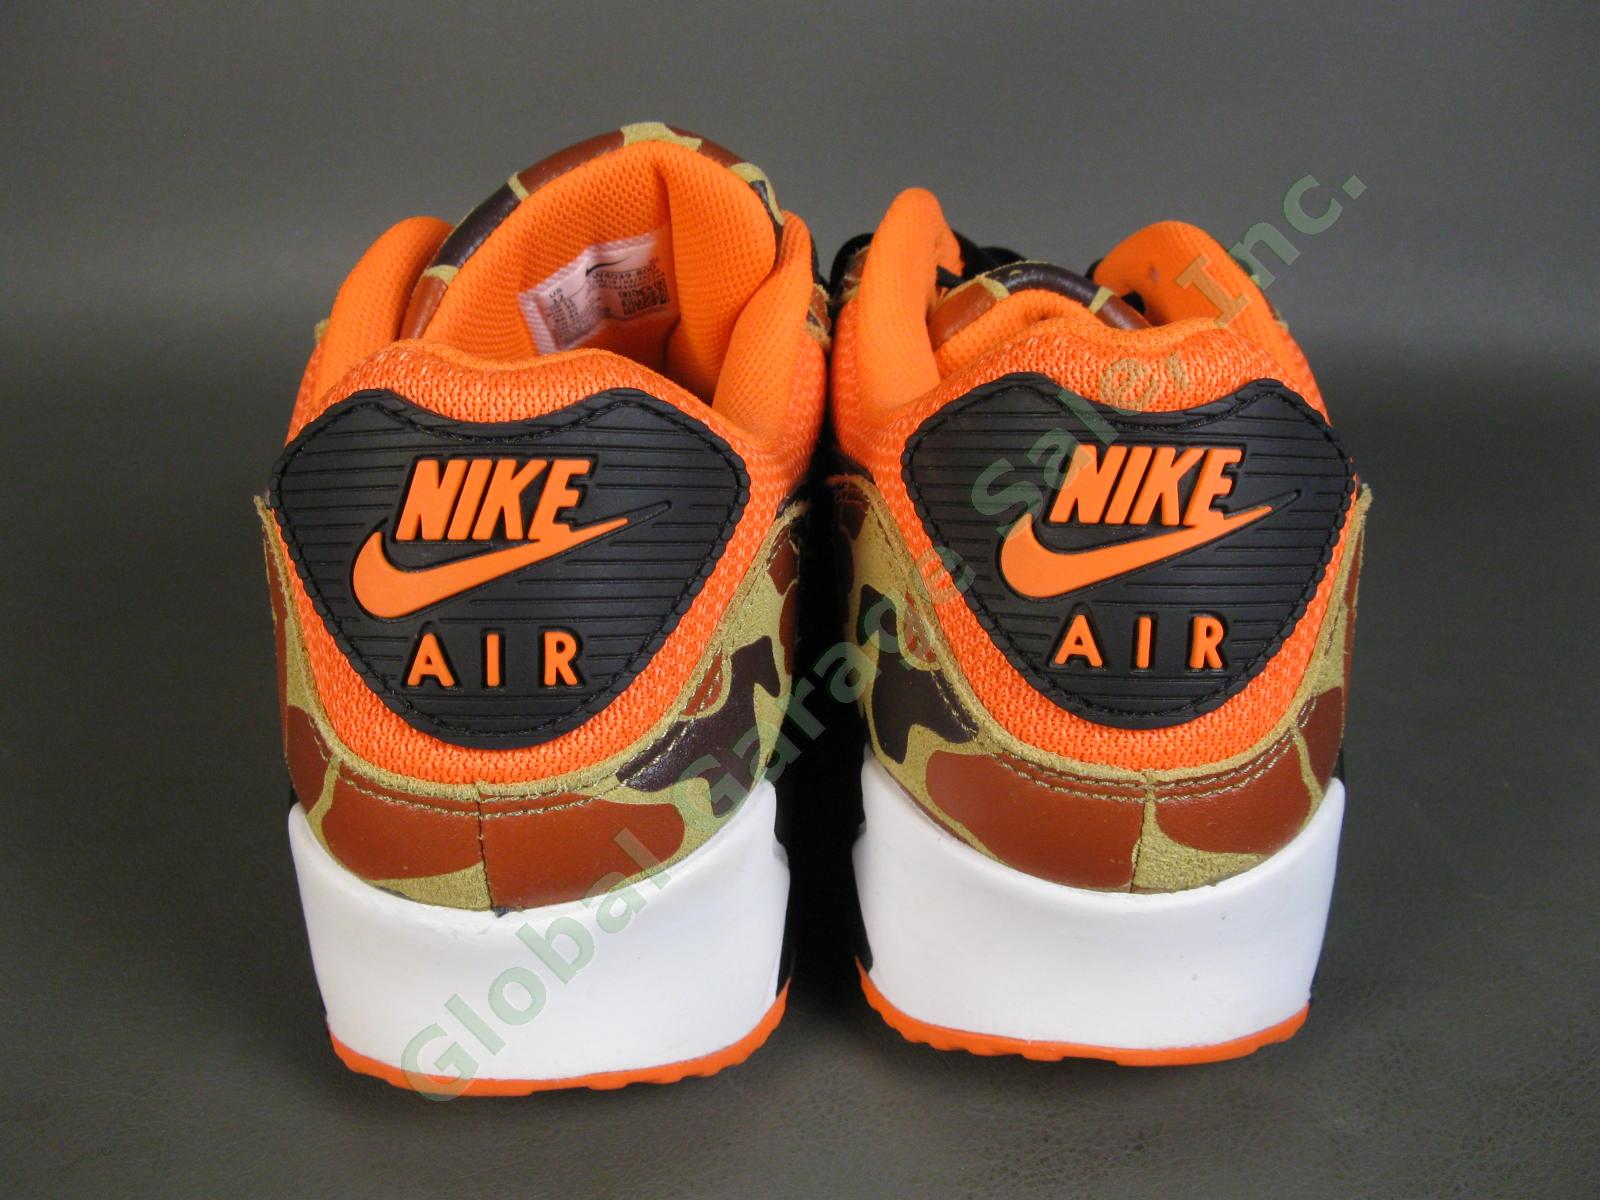 Nike Air Max 90 Orange Duck Camo Shoes CW4039-800 US Men Size 12 Excellent Shape 3